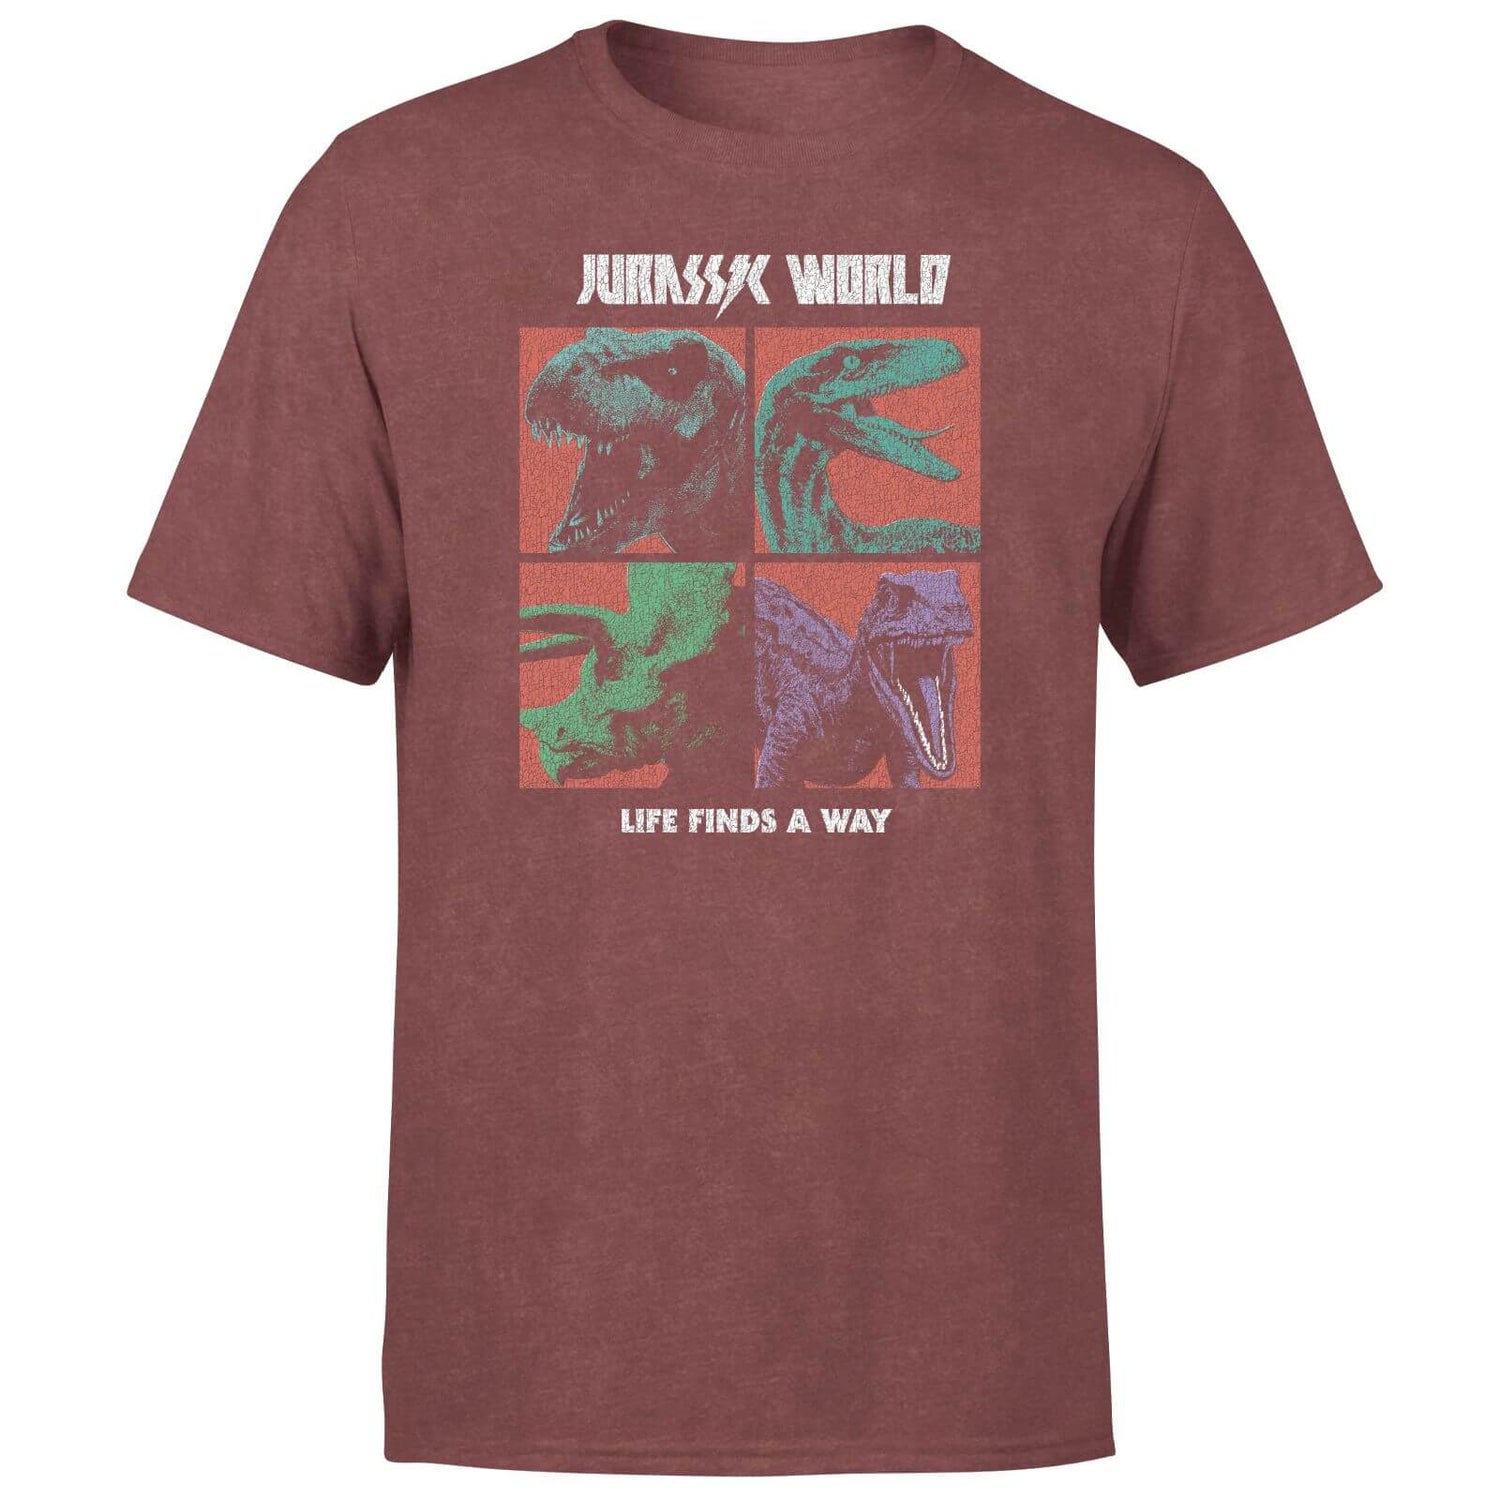 Jurassic Park World Four Colour Faces Men's T-Shirt - Burgundy Acid Wash